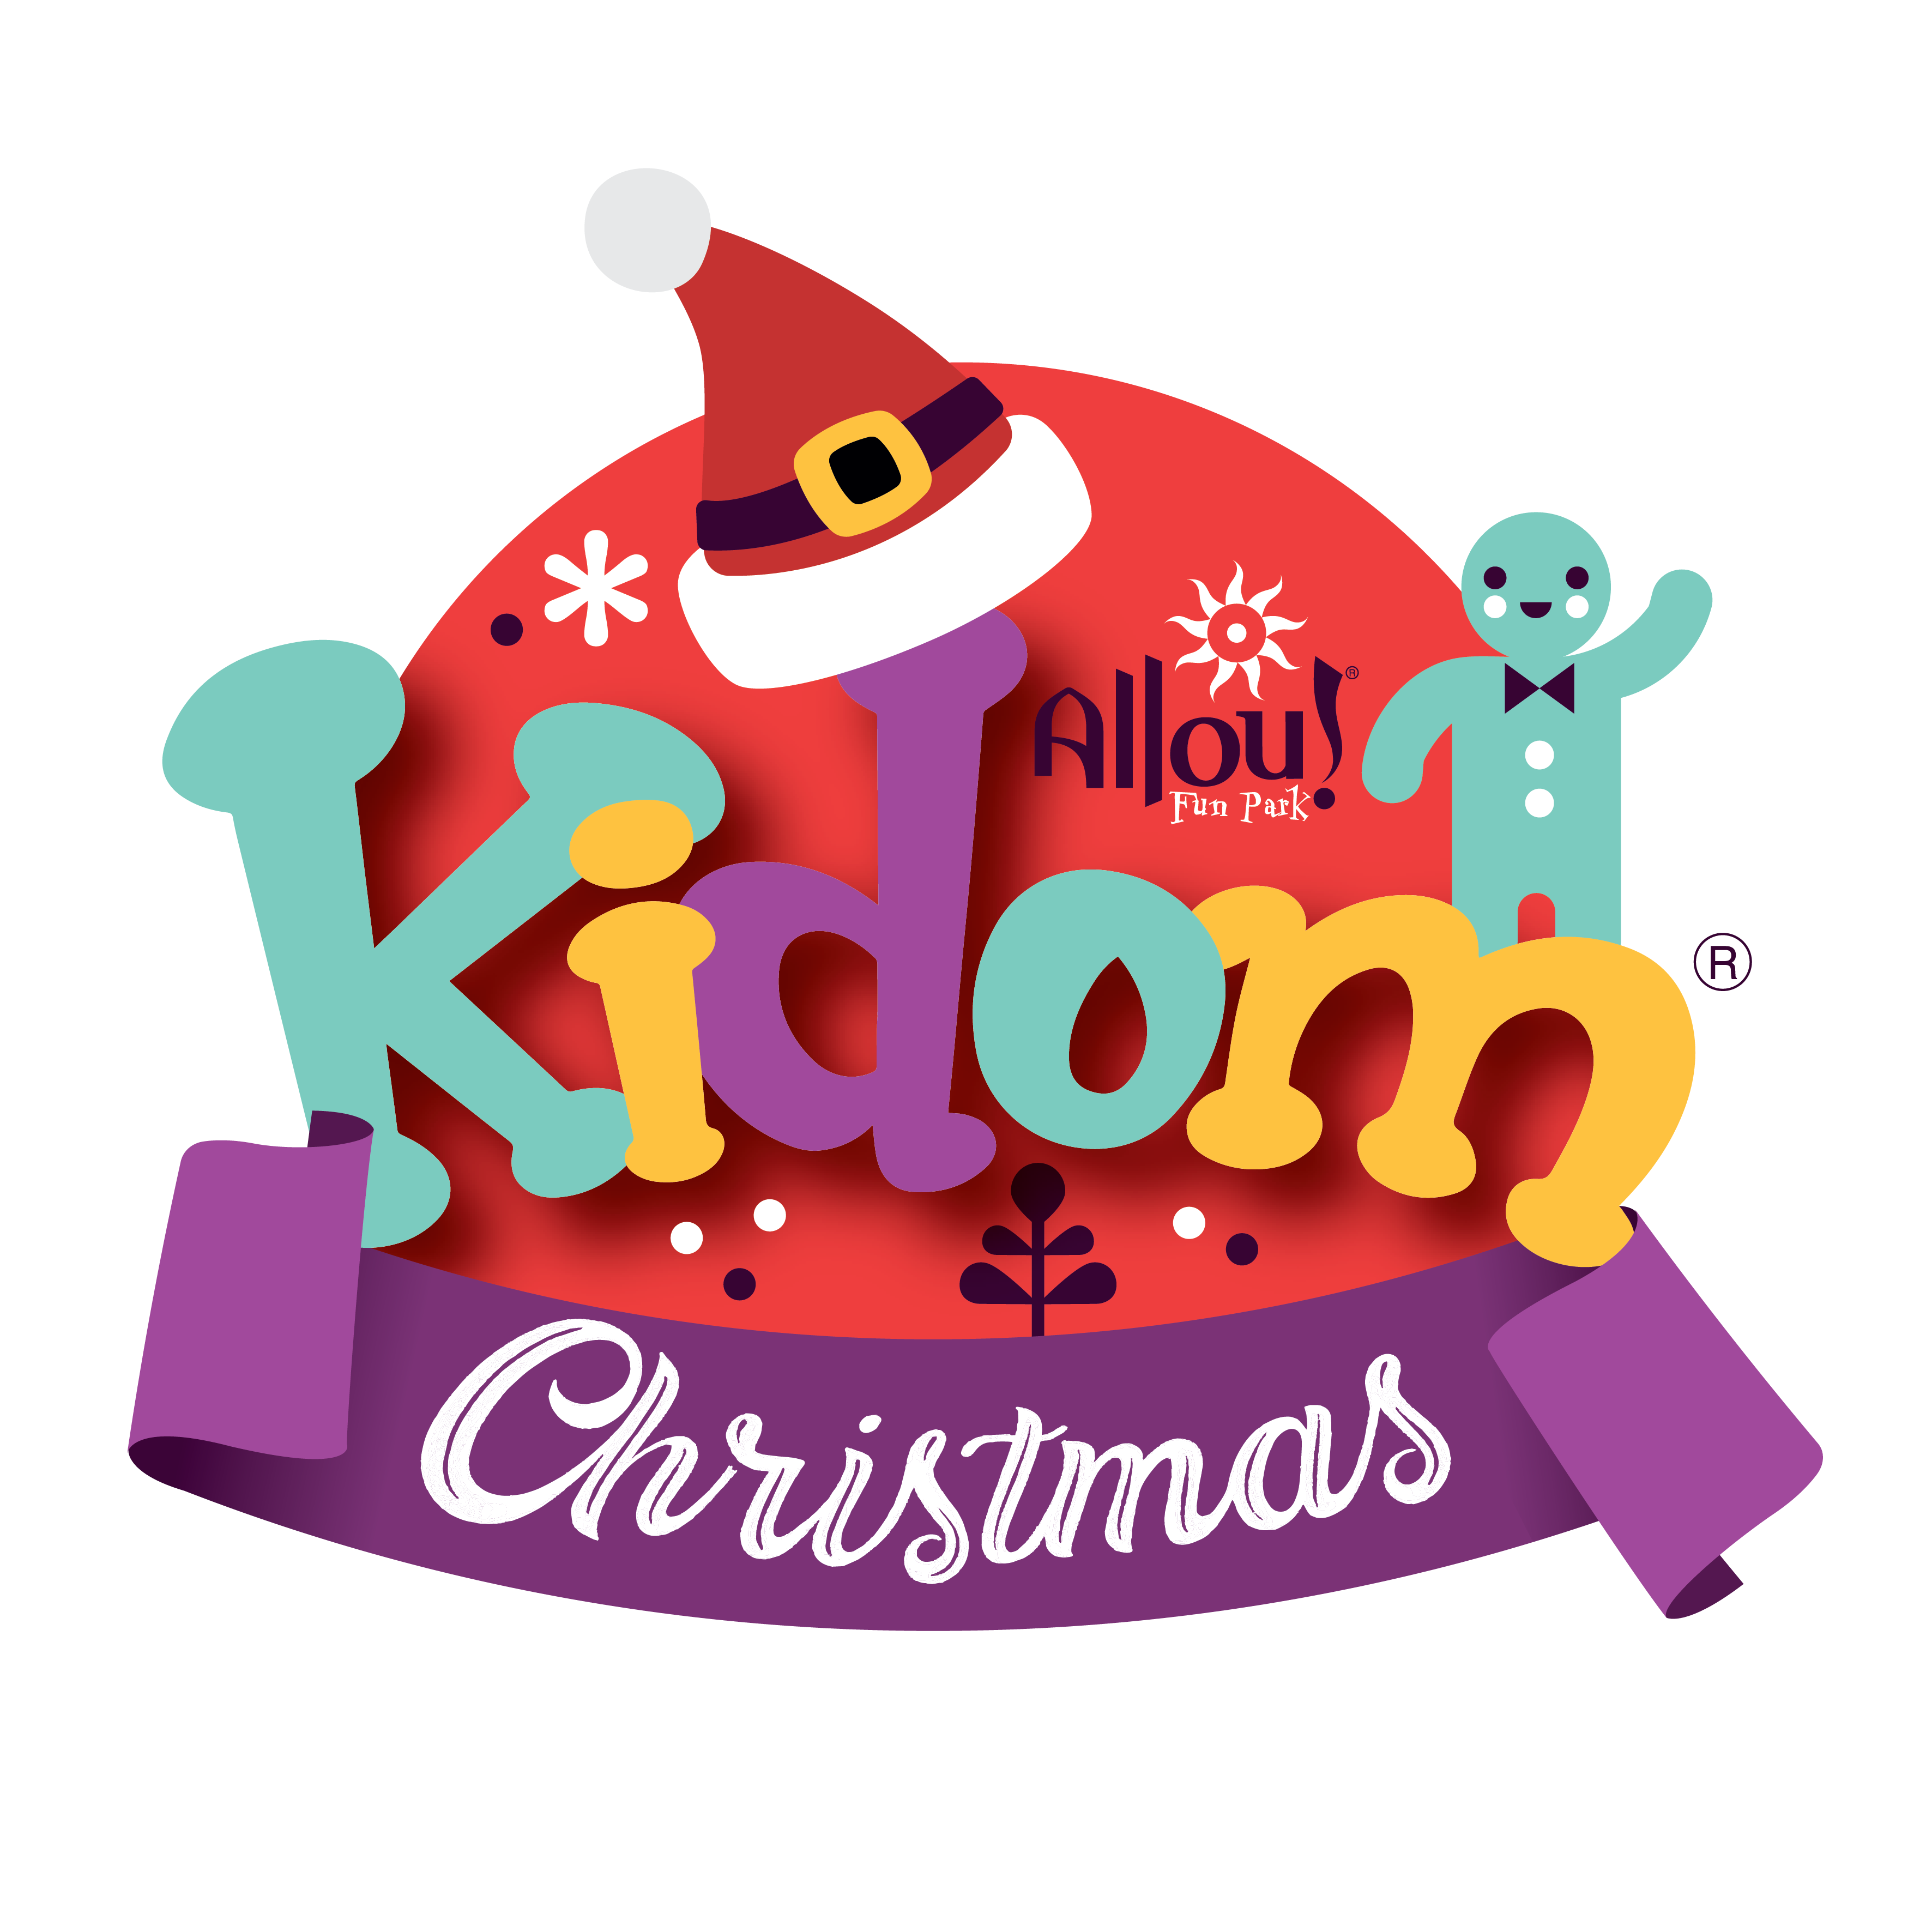 4 λόγοι που φέτος τα Χριστούγεννα θα πάμε οικογενειακώς στο Kidom του Allou! Fun Park